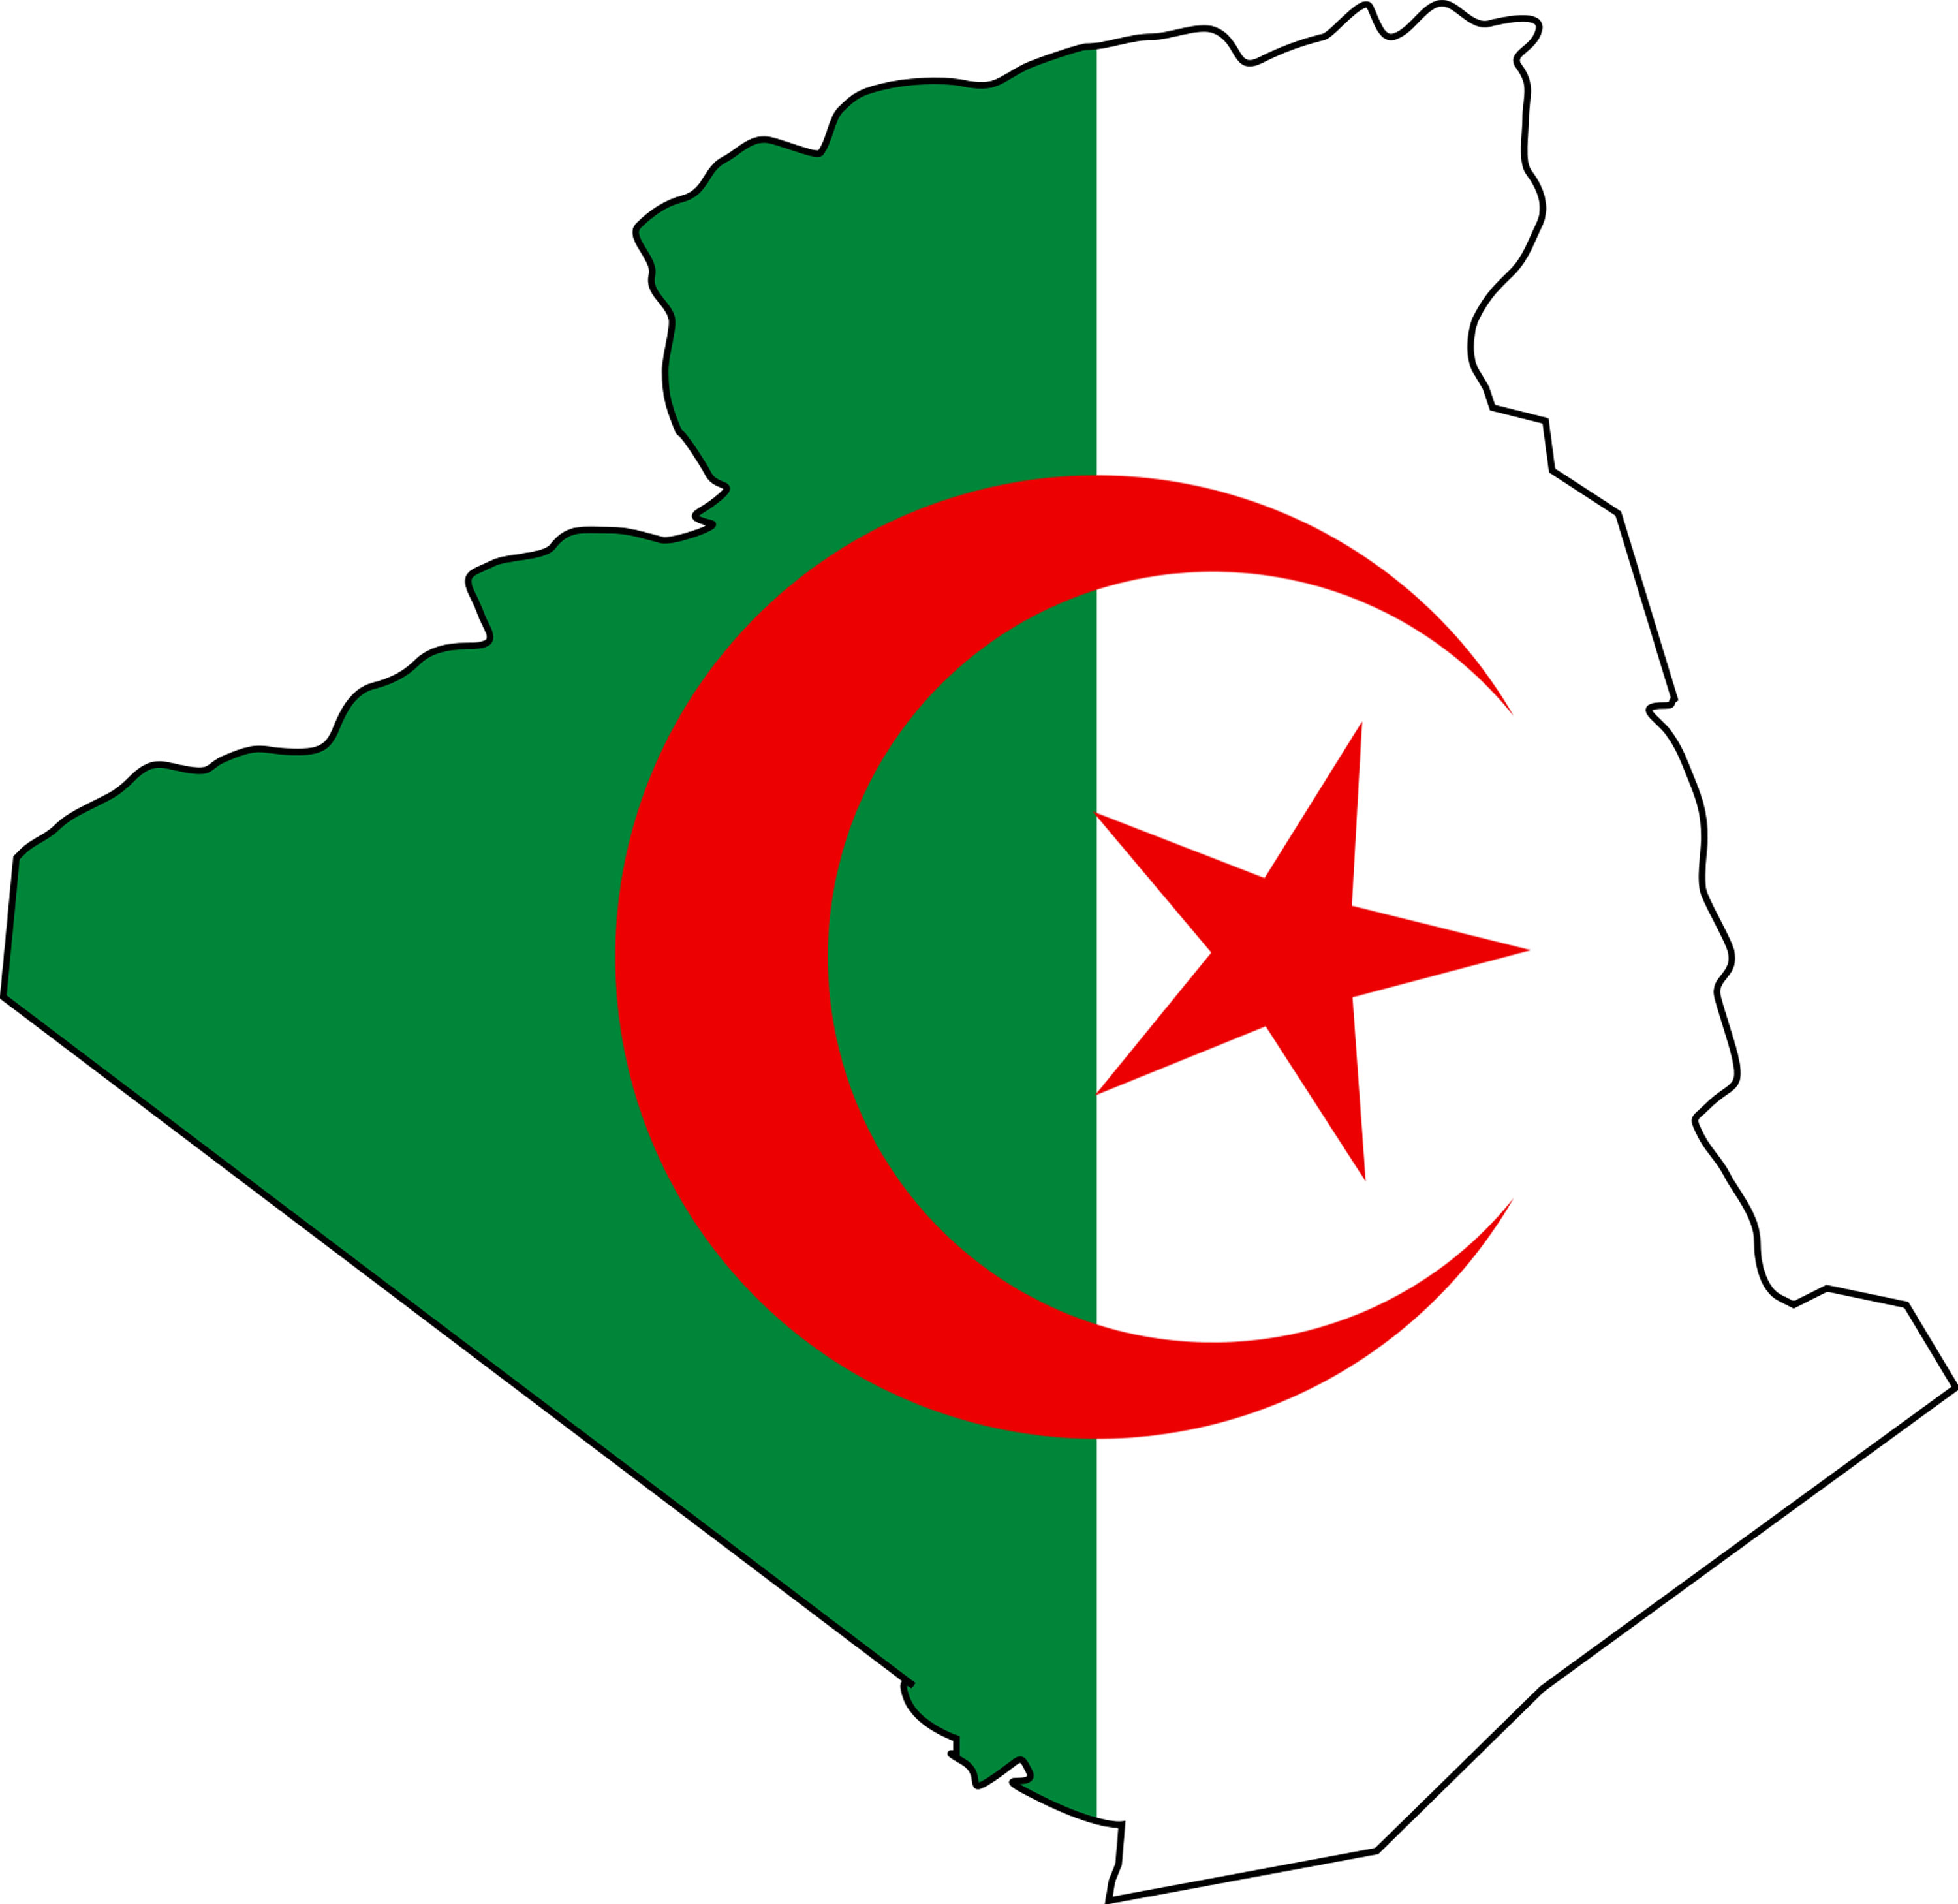 Mieux comprendre la catastrophe pour la France que représente l’immigration algérienne (DATAS)